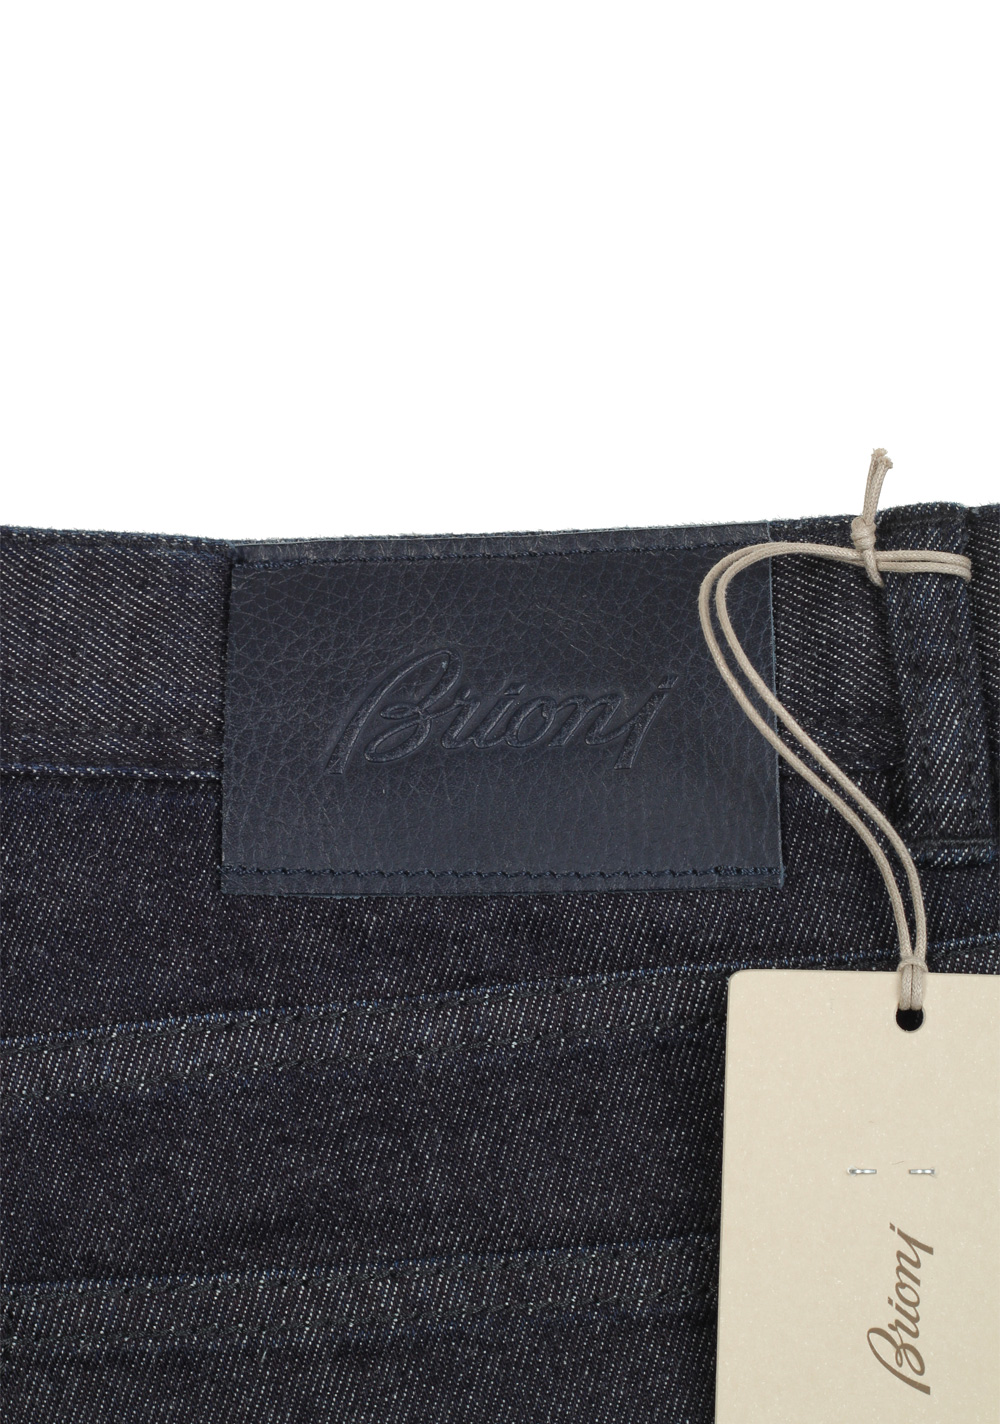 Brioni Blue Jeans SPL40Z Trousers Size 56 / 40 U.S. | Costume Limité